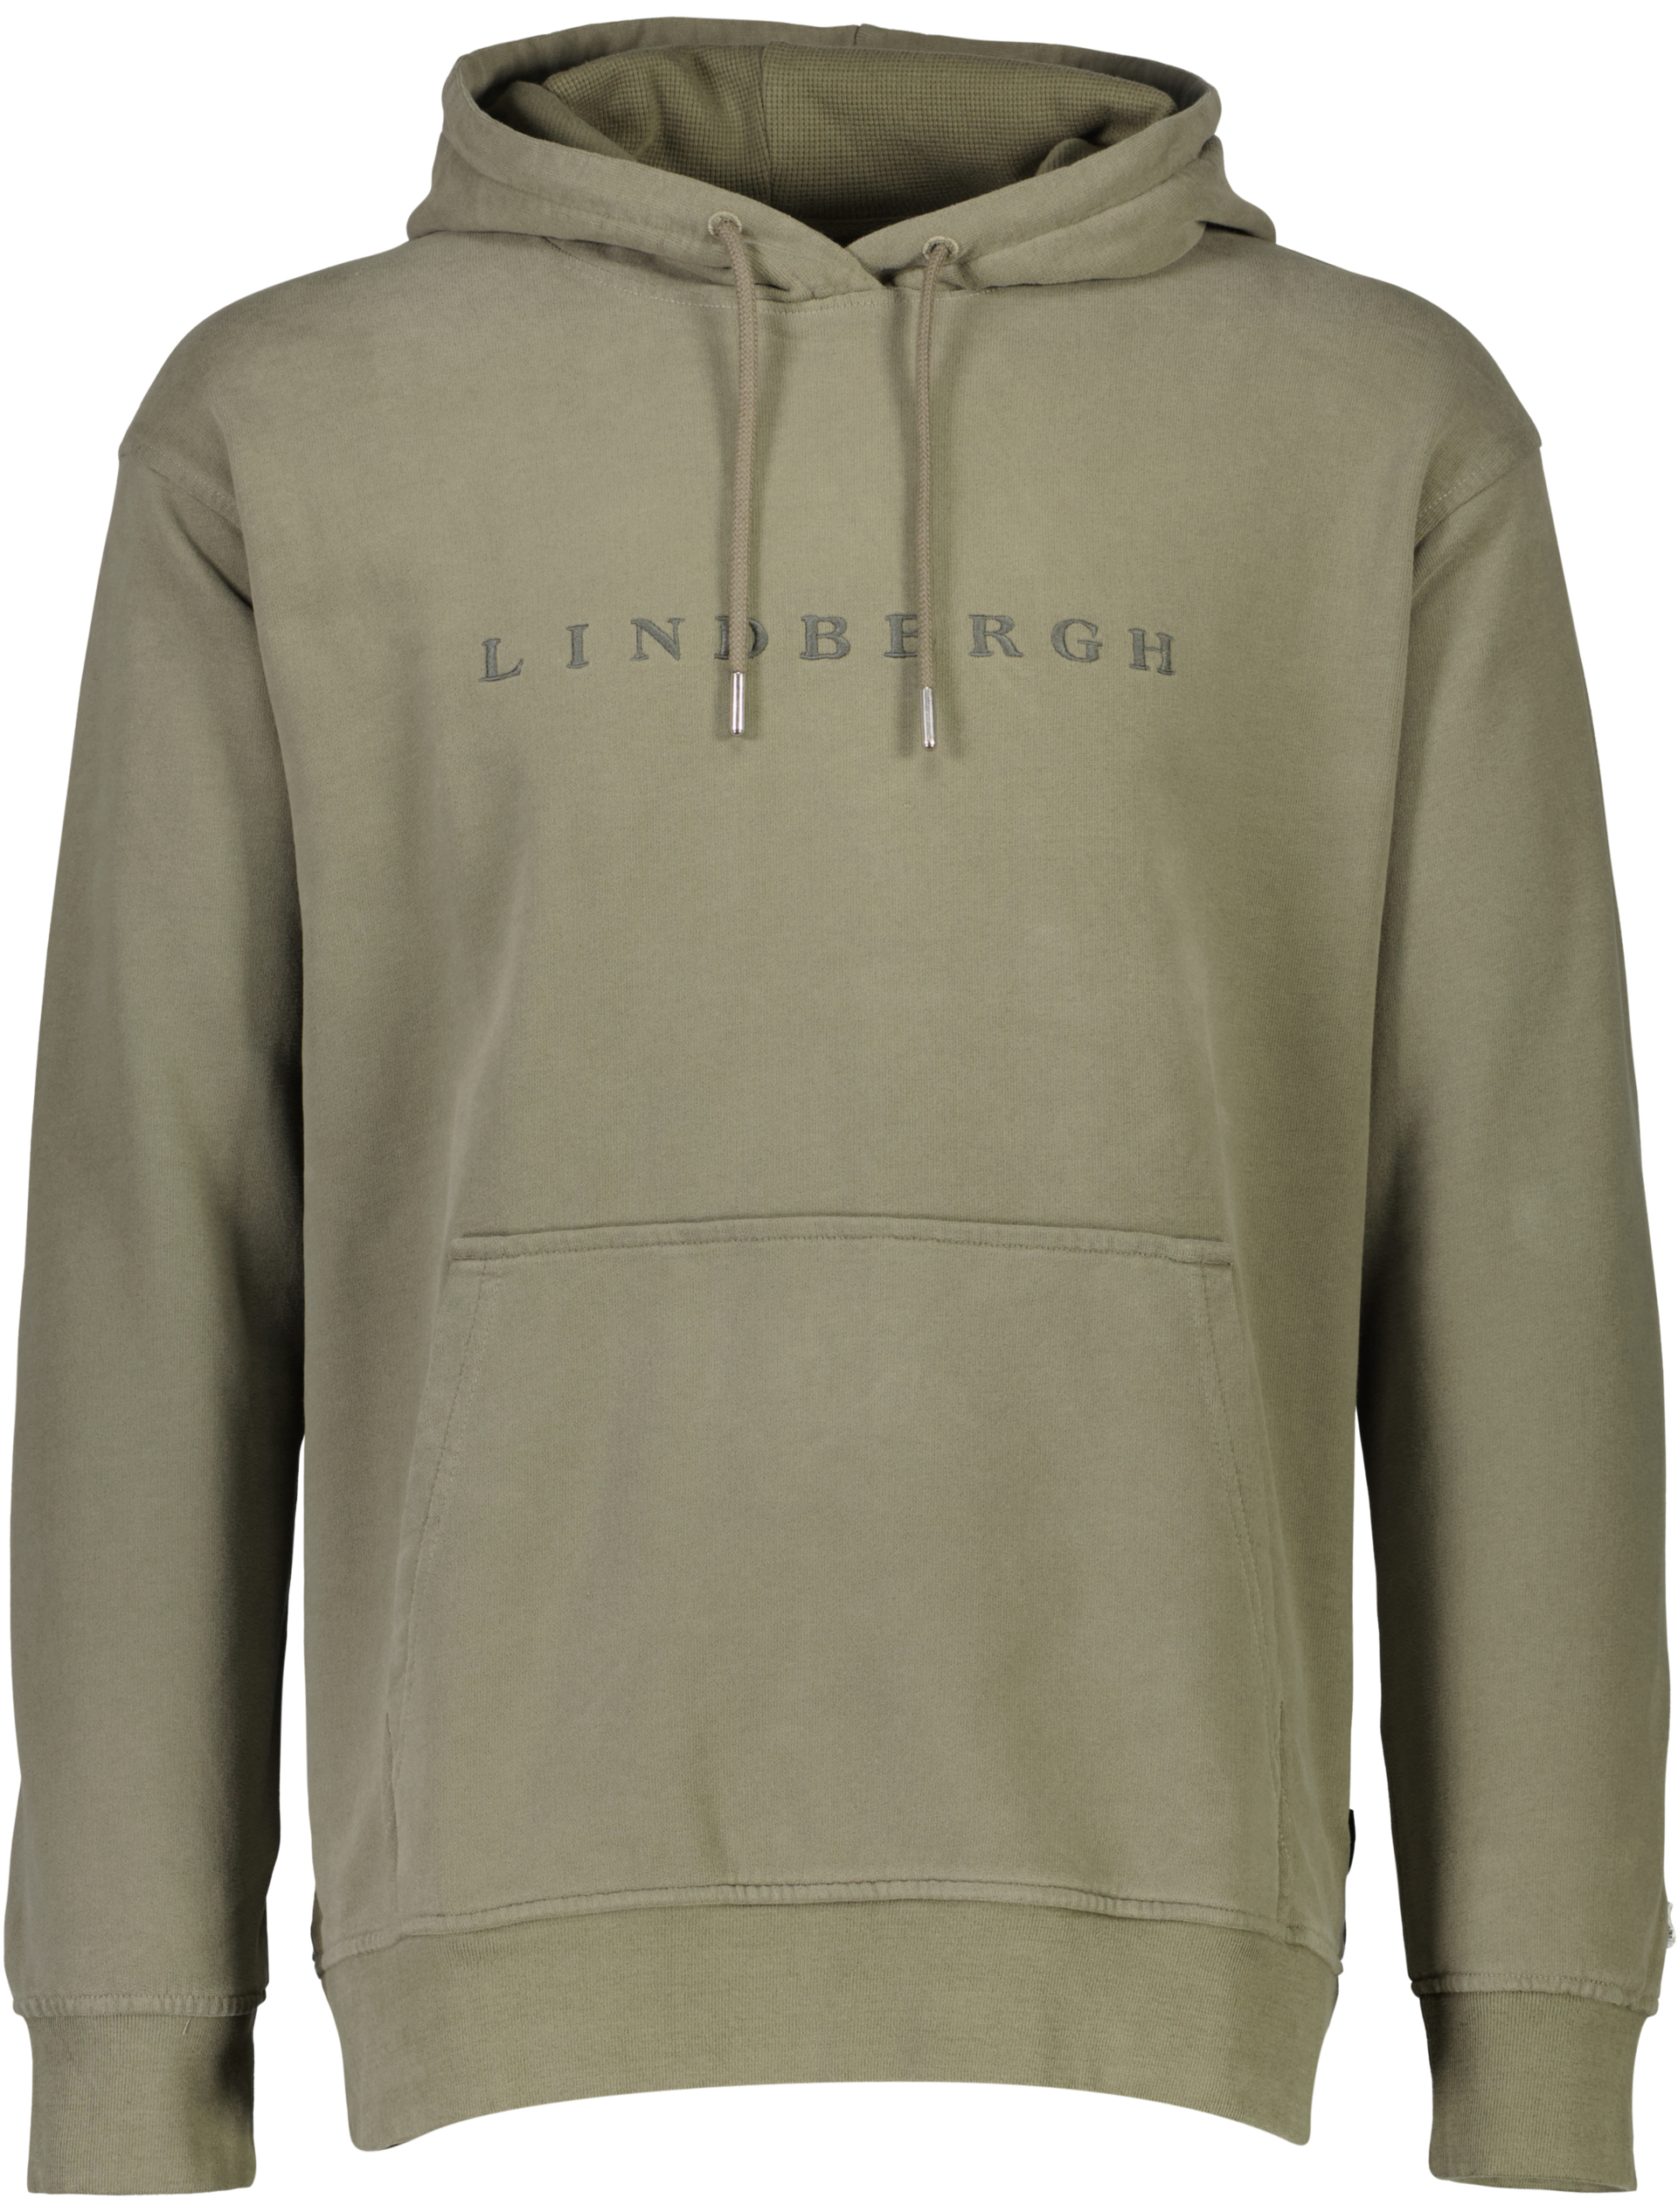 Lindbergh Hoodie groen / lt dusty army